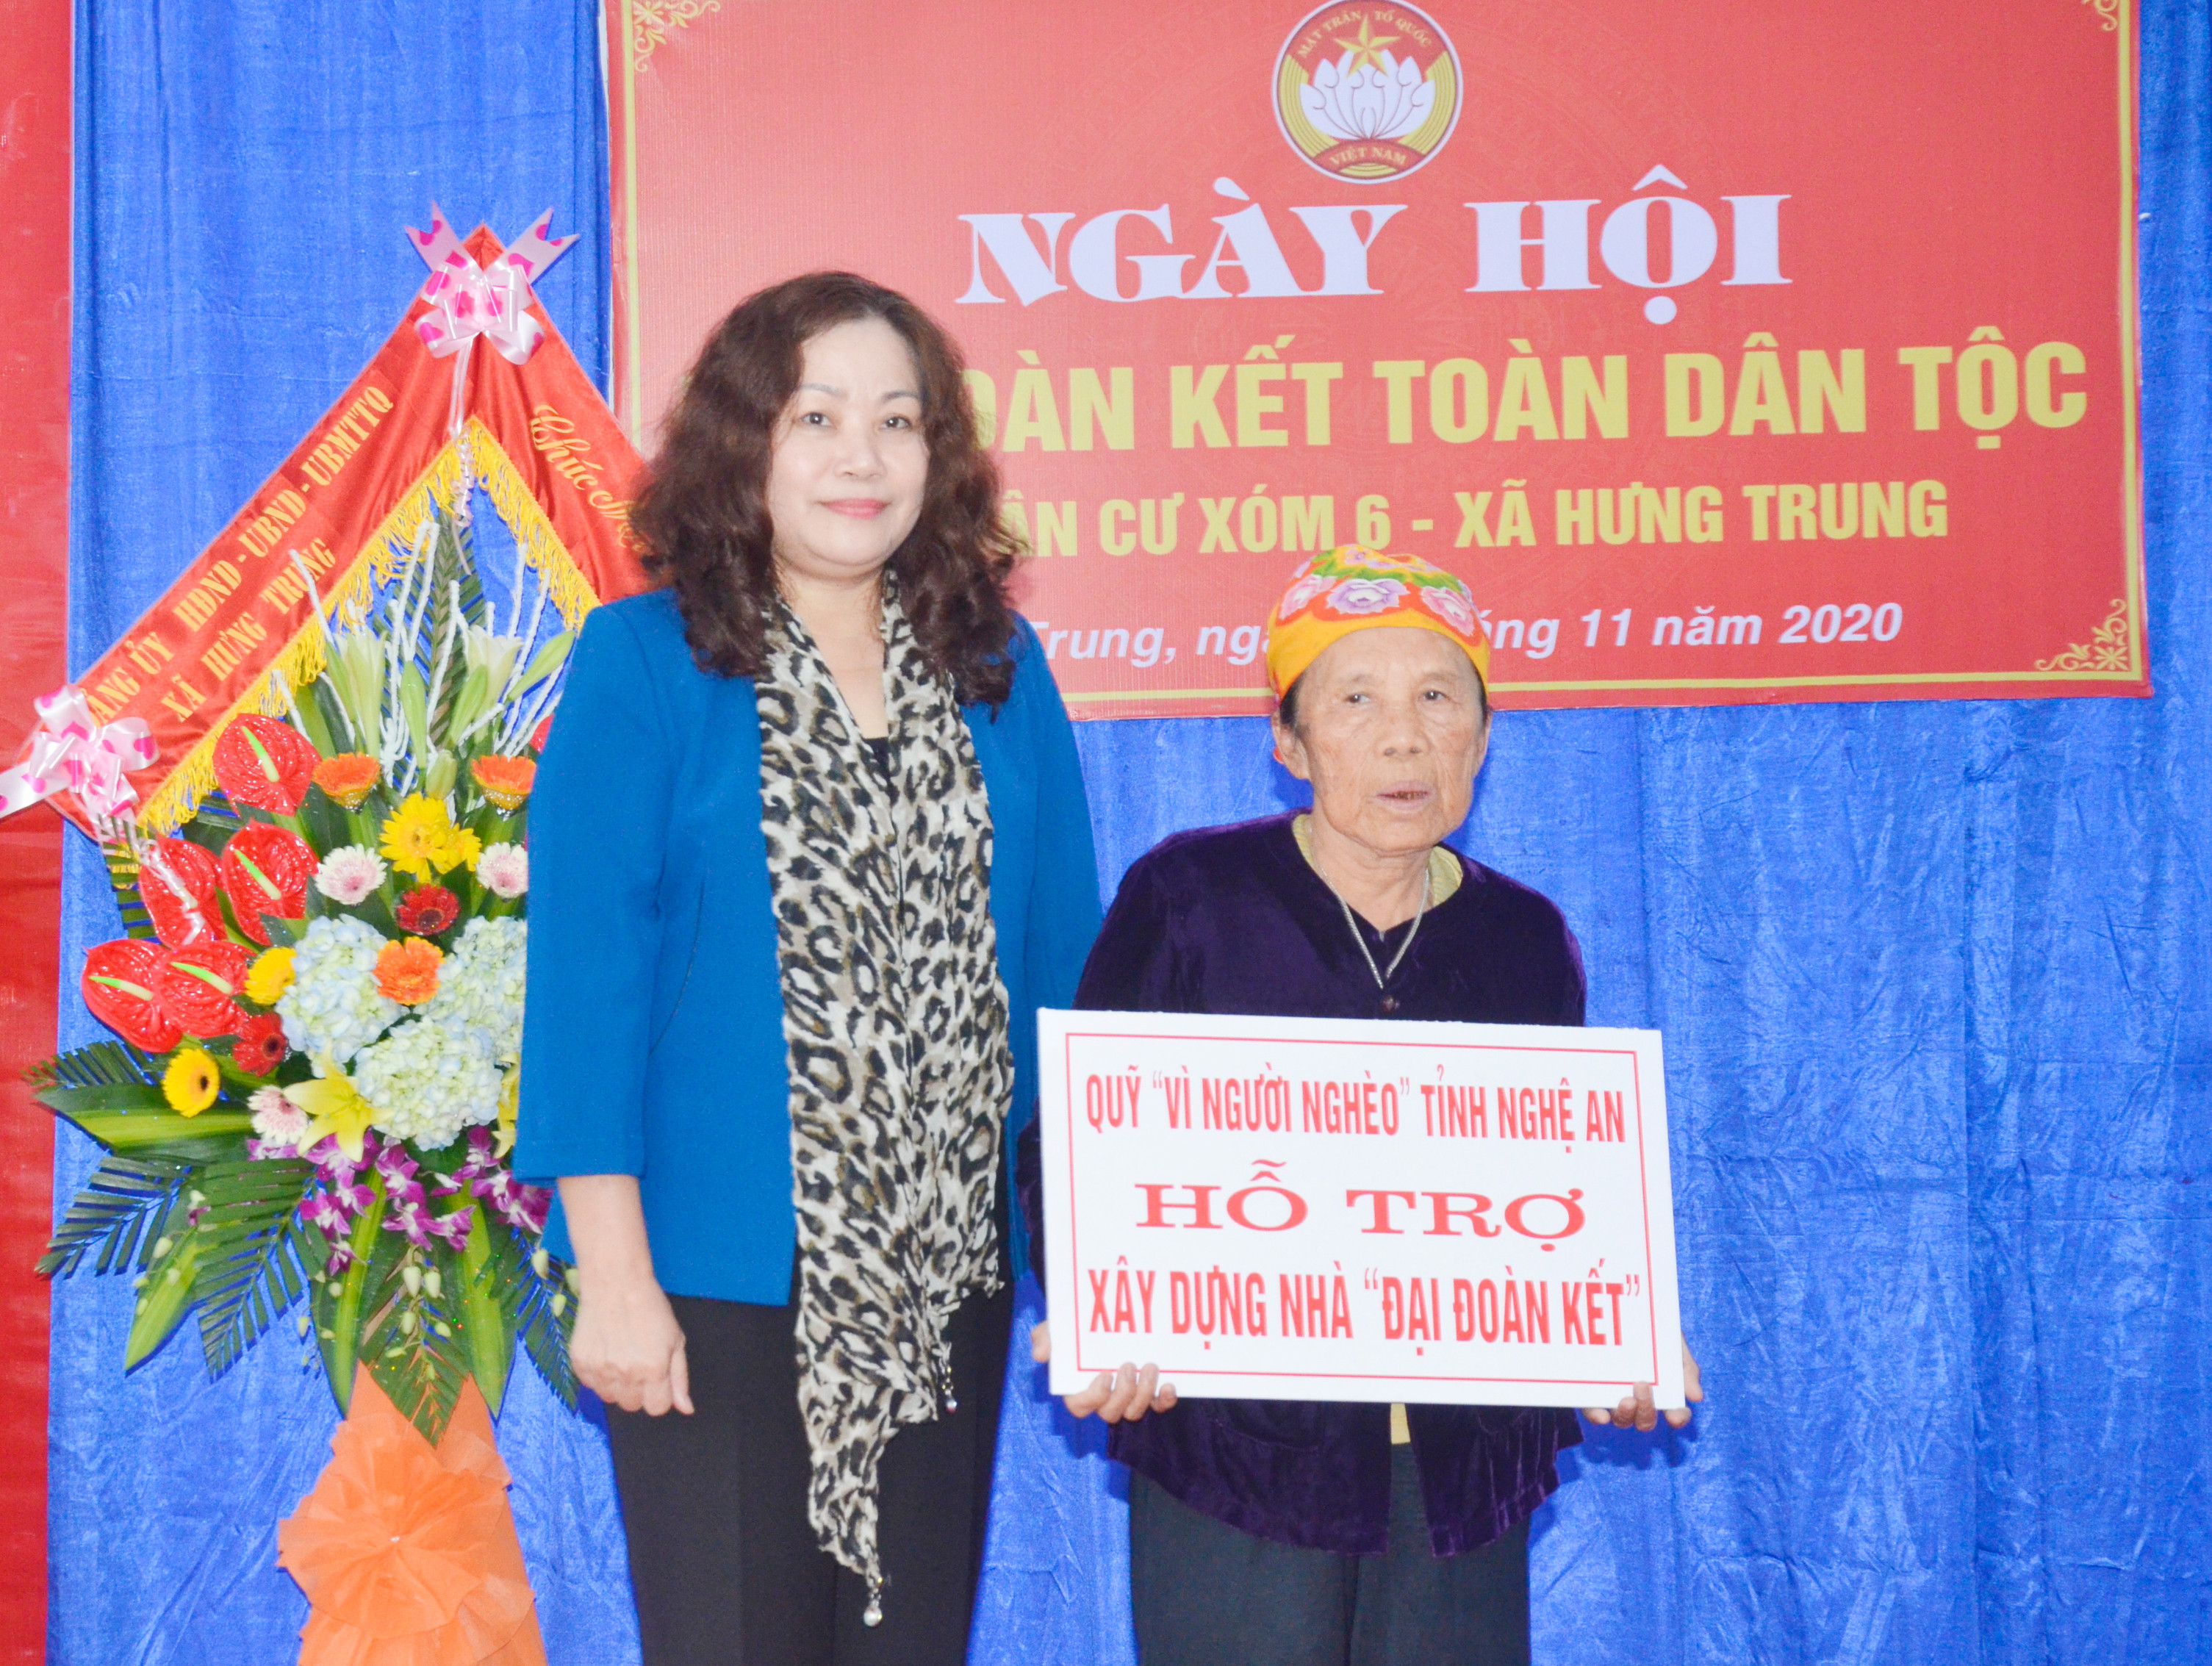 Trao nhà đại đoàn kết cho hộ bà Nguyễn Thị Huệ ở xóm 9A xã Hưng Trung. Ảnh: Thanh Lê